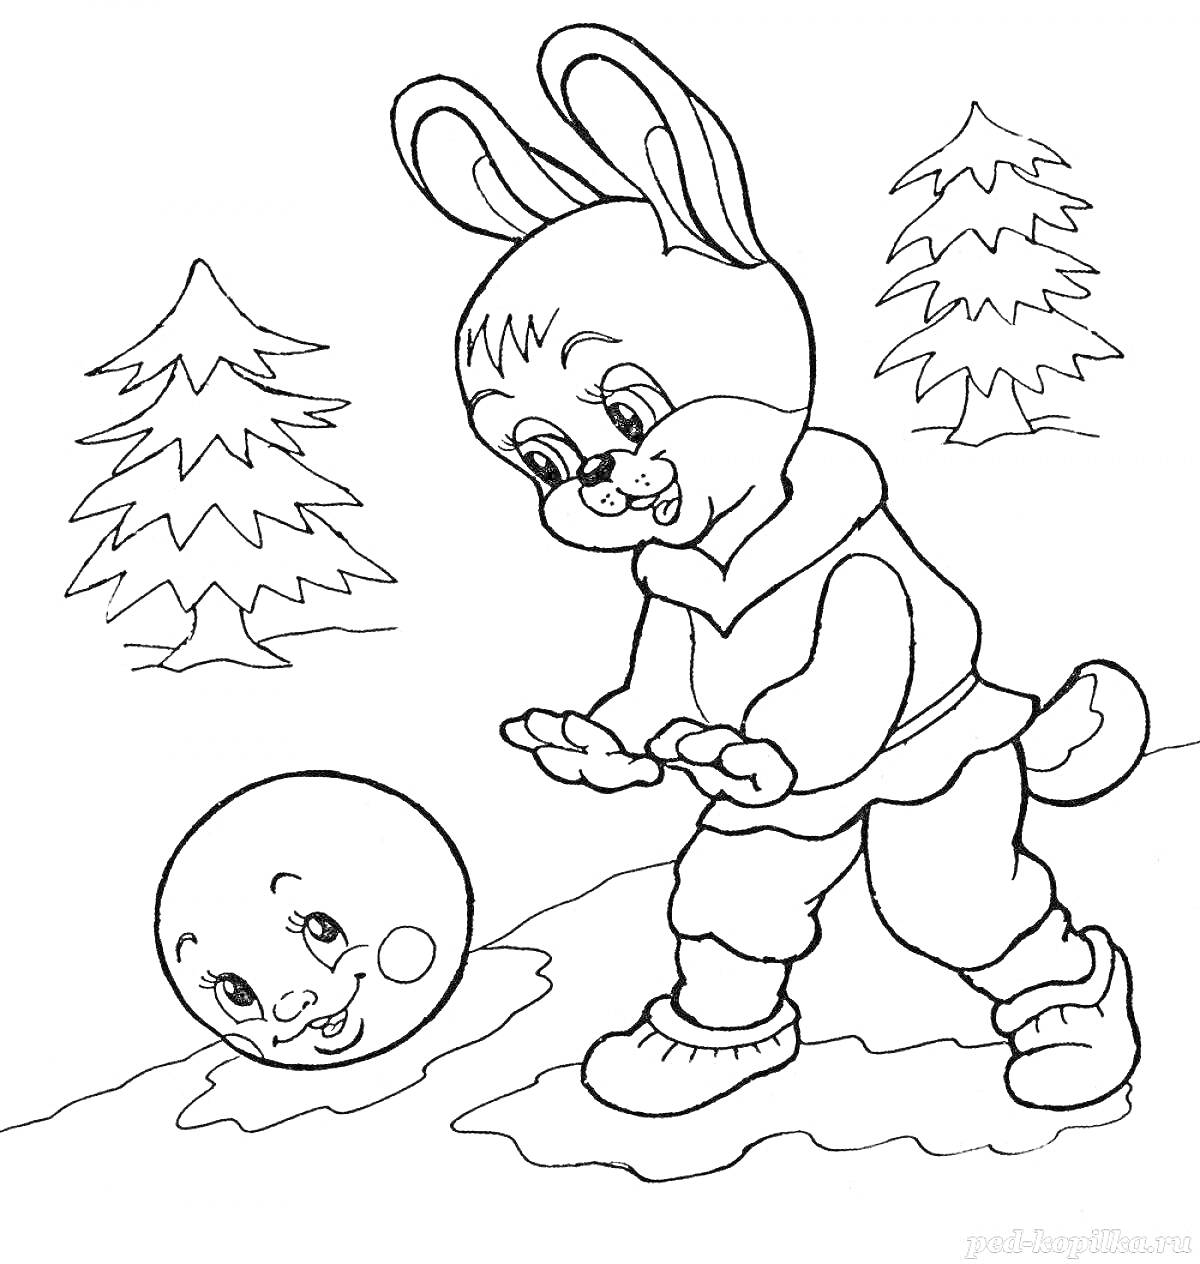 Раскраска Колобок и зайчик на зимней поляне с елками